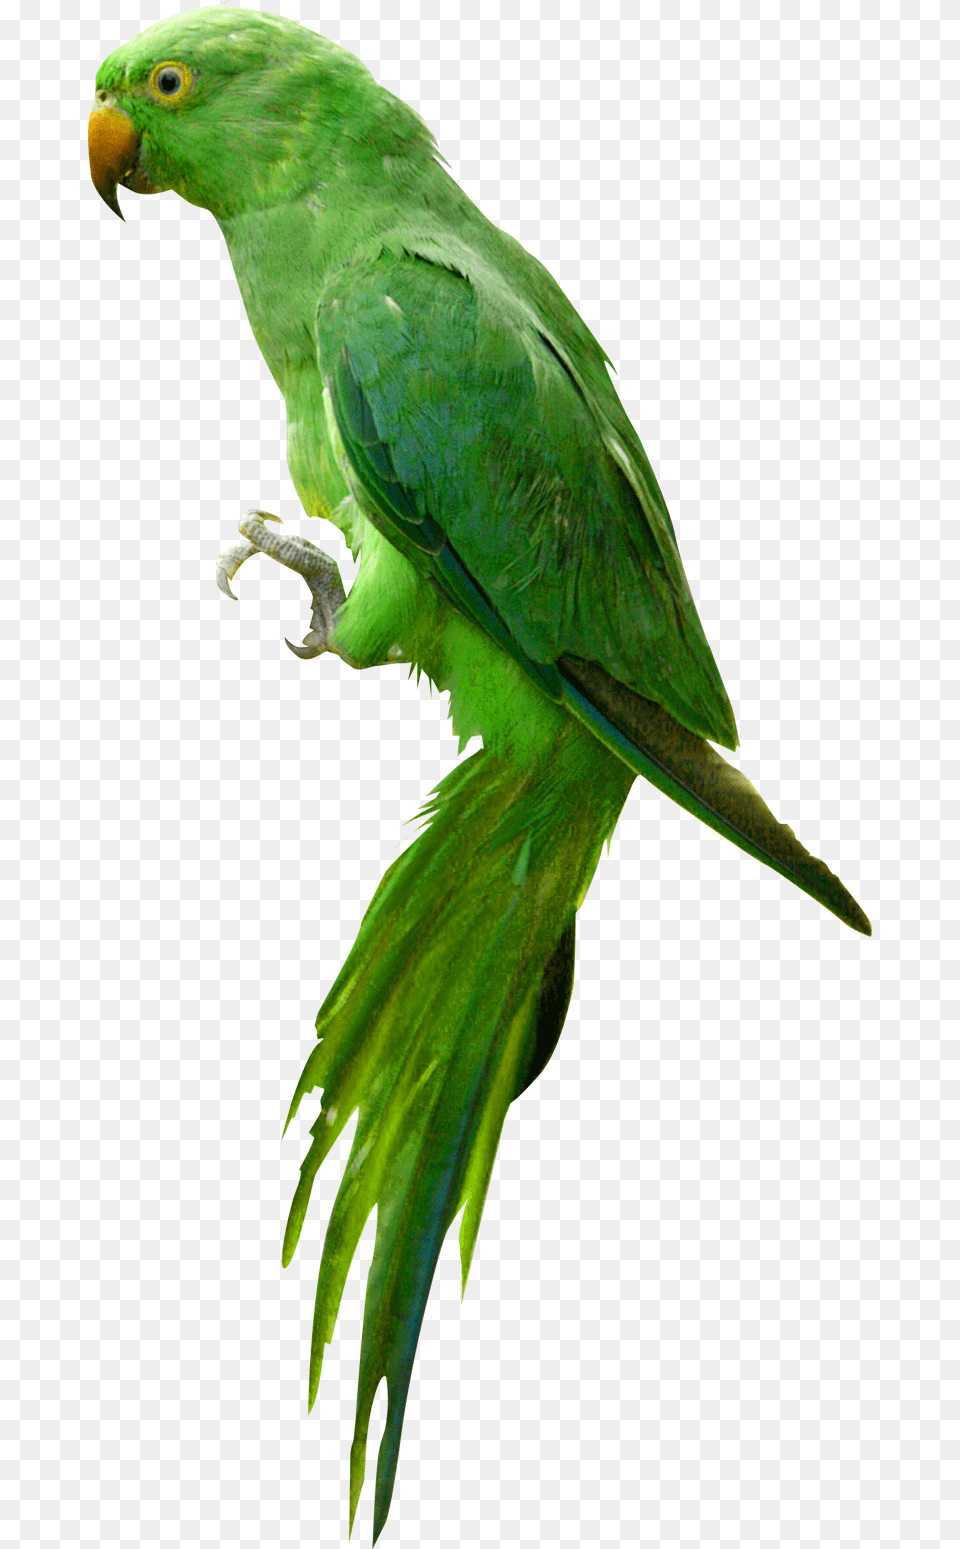 Parrot, Animal, Bird, Parakeet Free Transparent Png